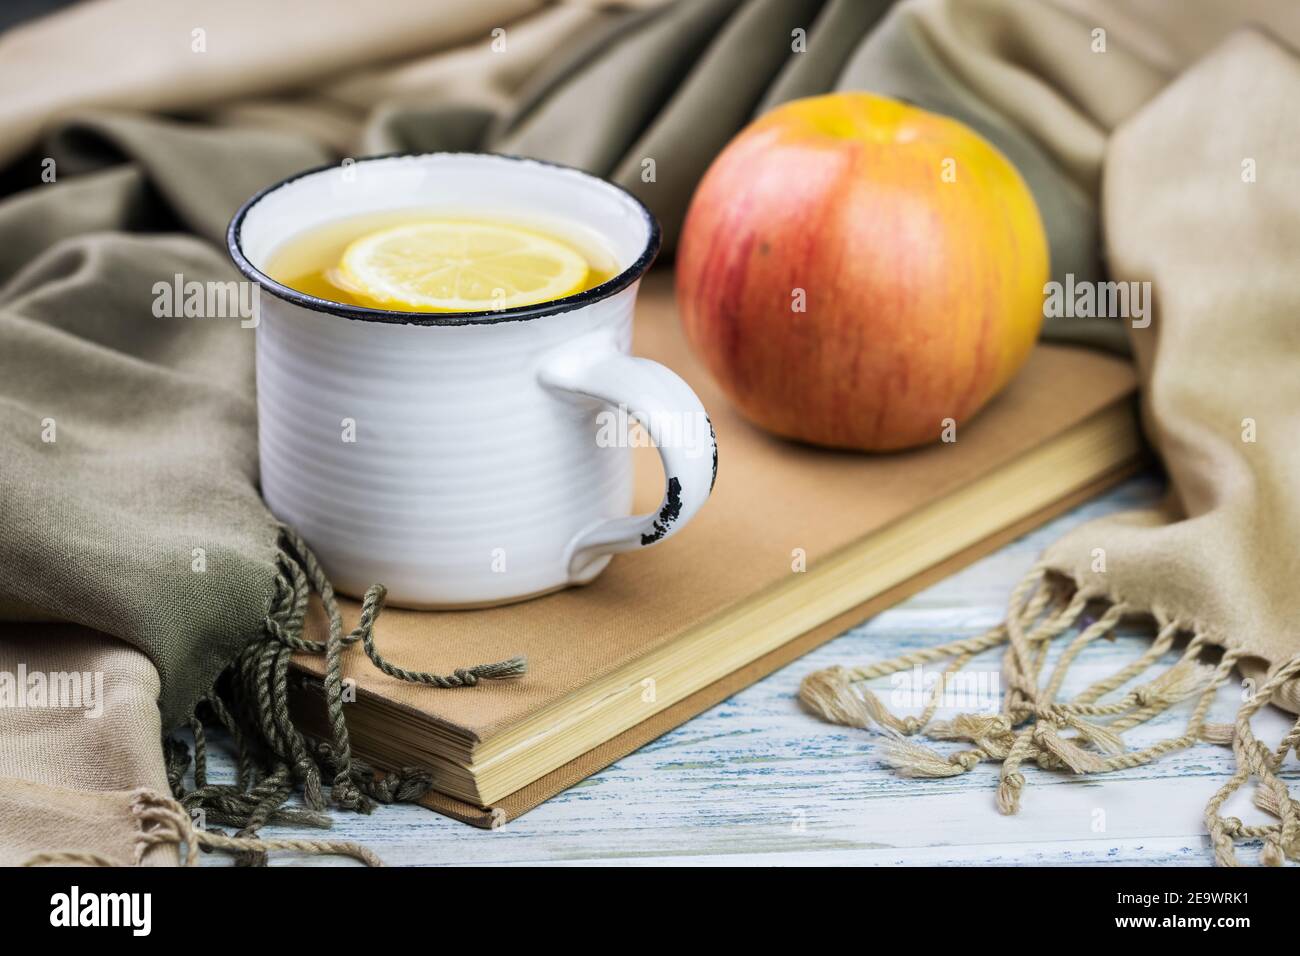 Tazza da tè e mela su libro coprendo da sciarpa, ancora vita su tavola di legno bianco. Frutta fresca biologica e bevande calde rinfrescanti. Foto Stock